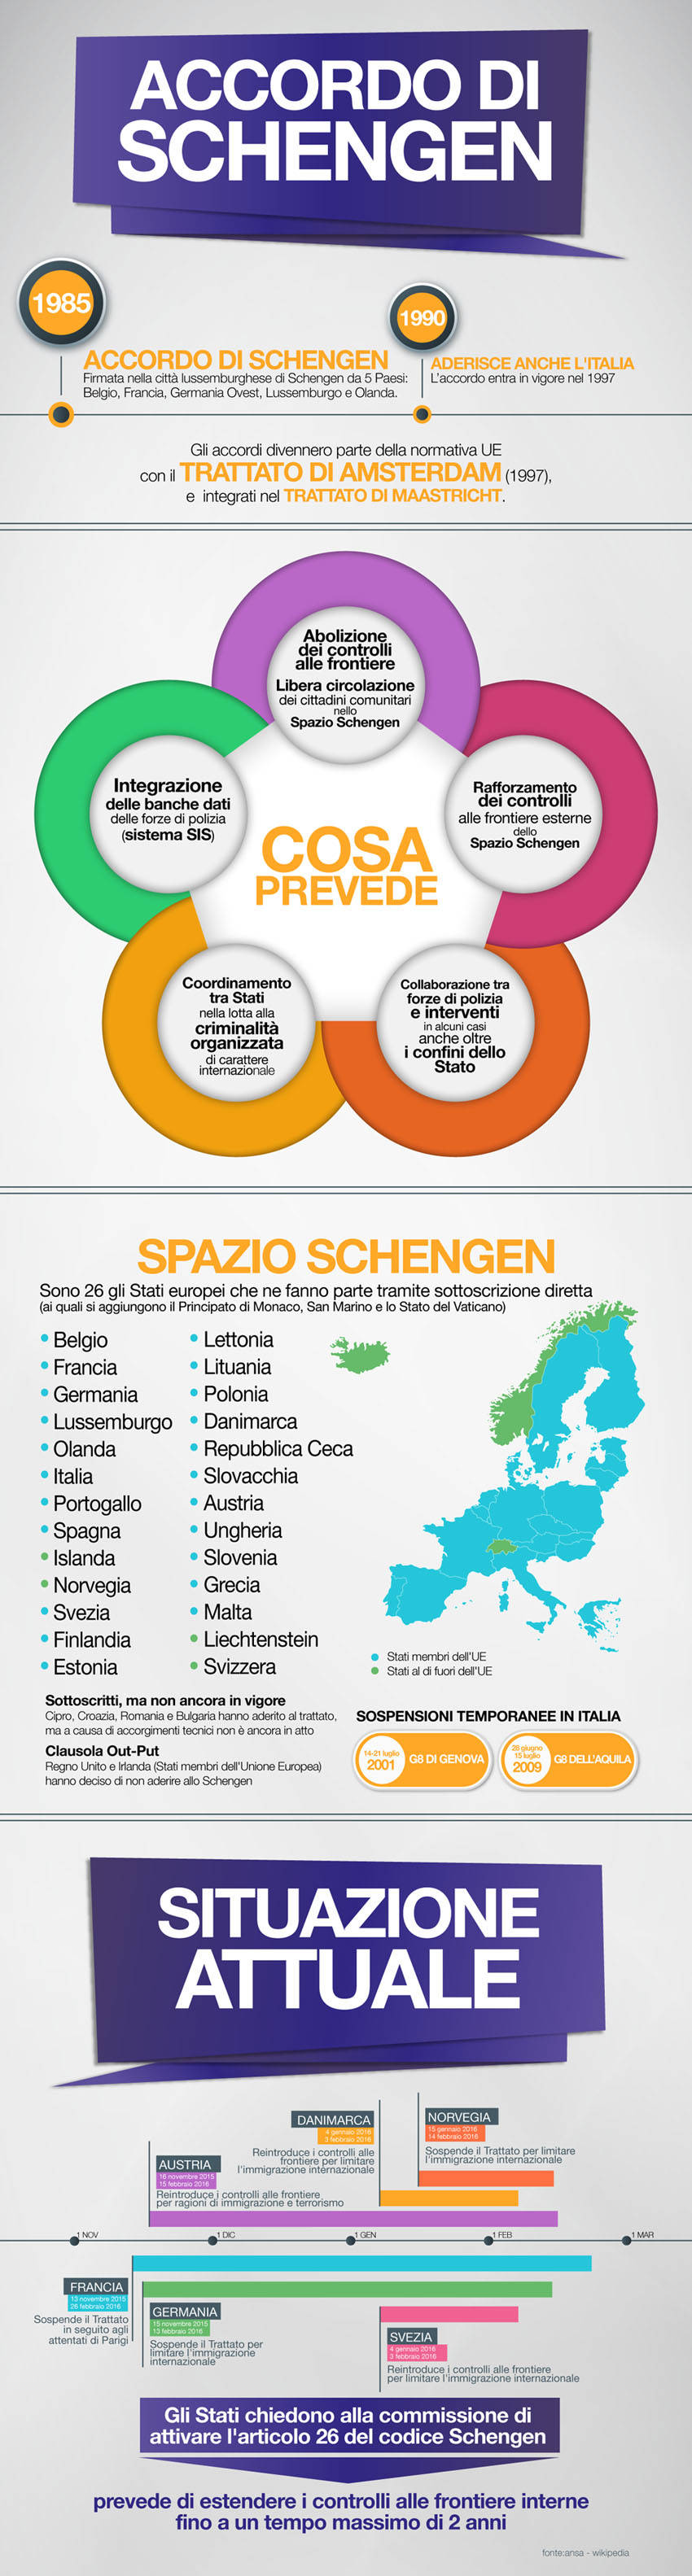 Info grafica sull' accordo di Schengen